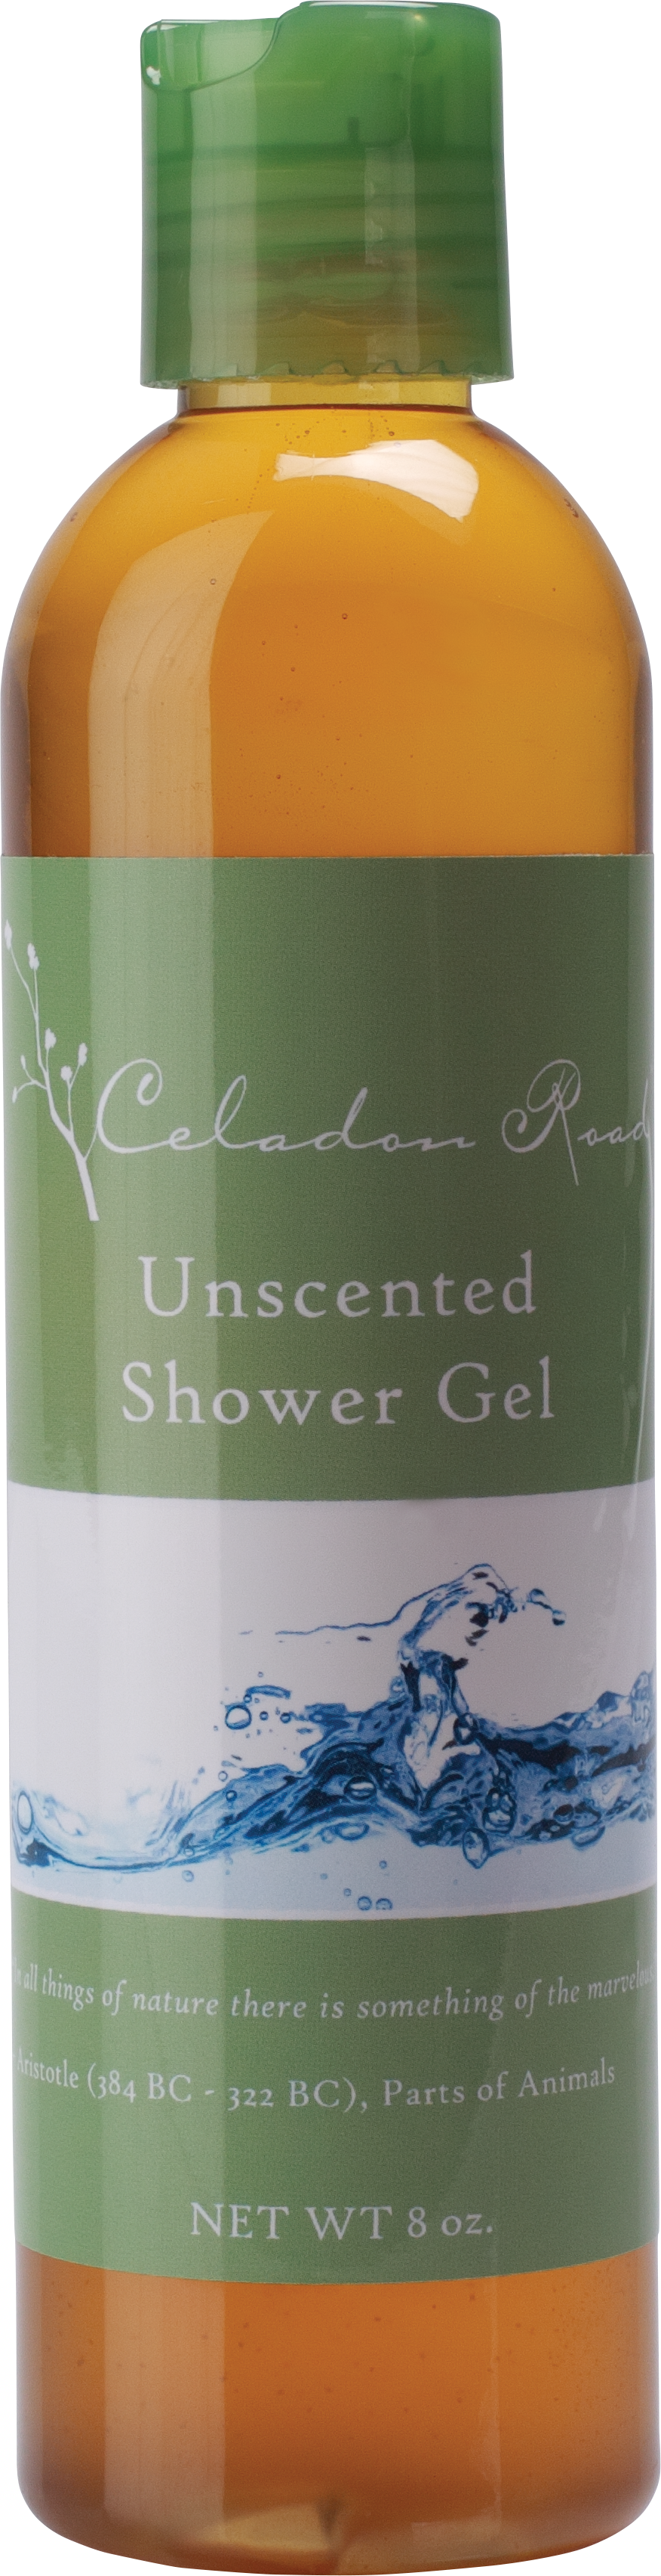 Unscented Shower Gel- Celadon Road- www.celadonroad.com